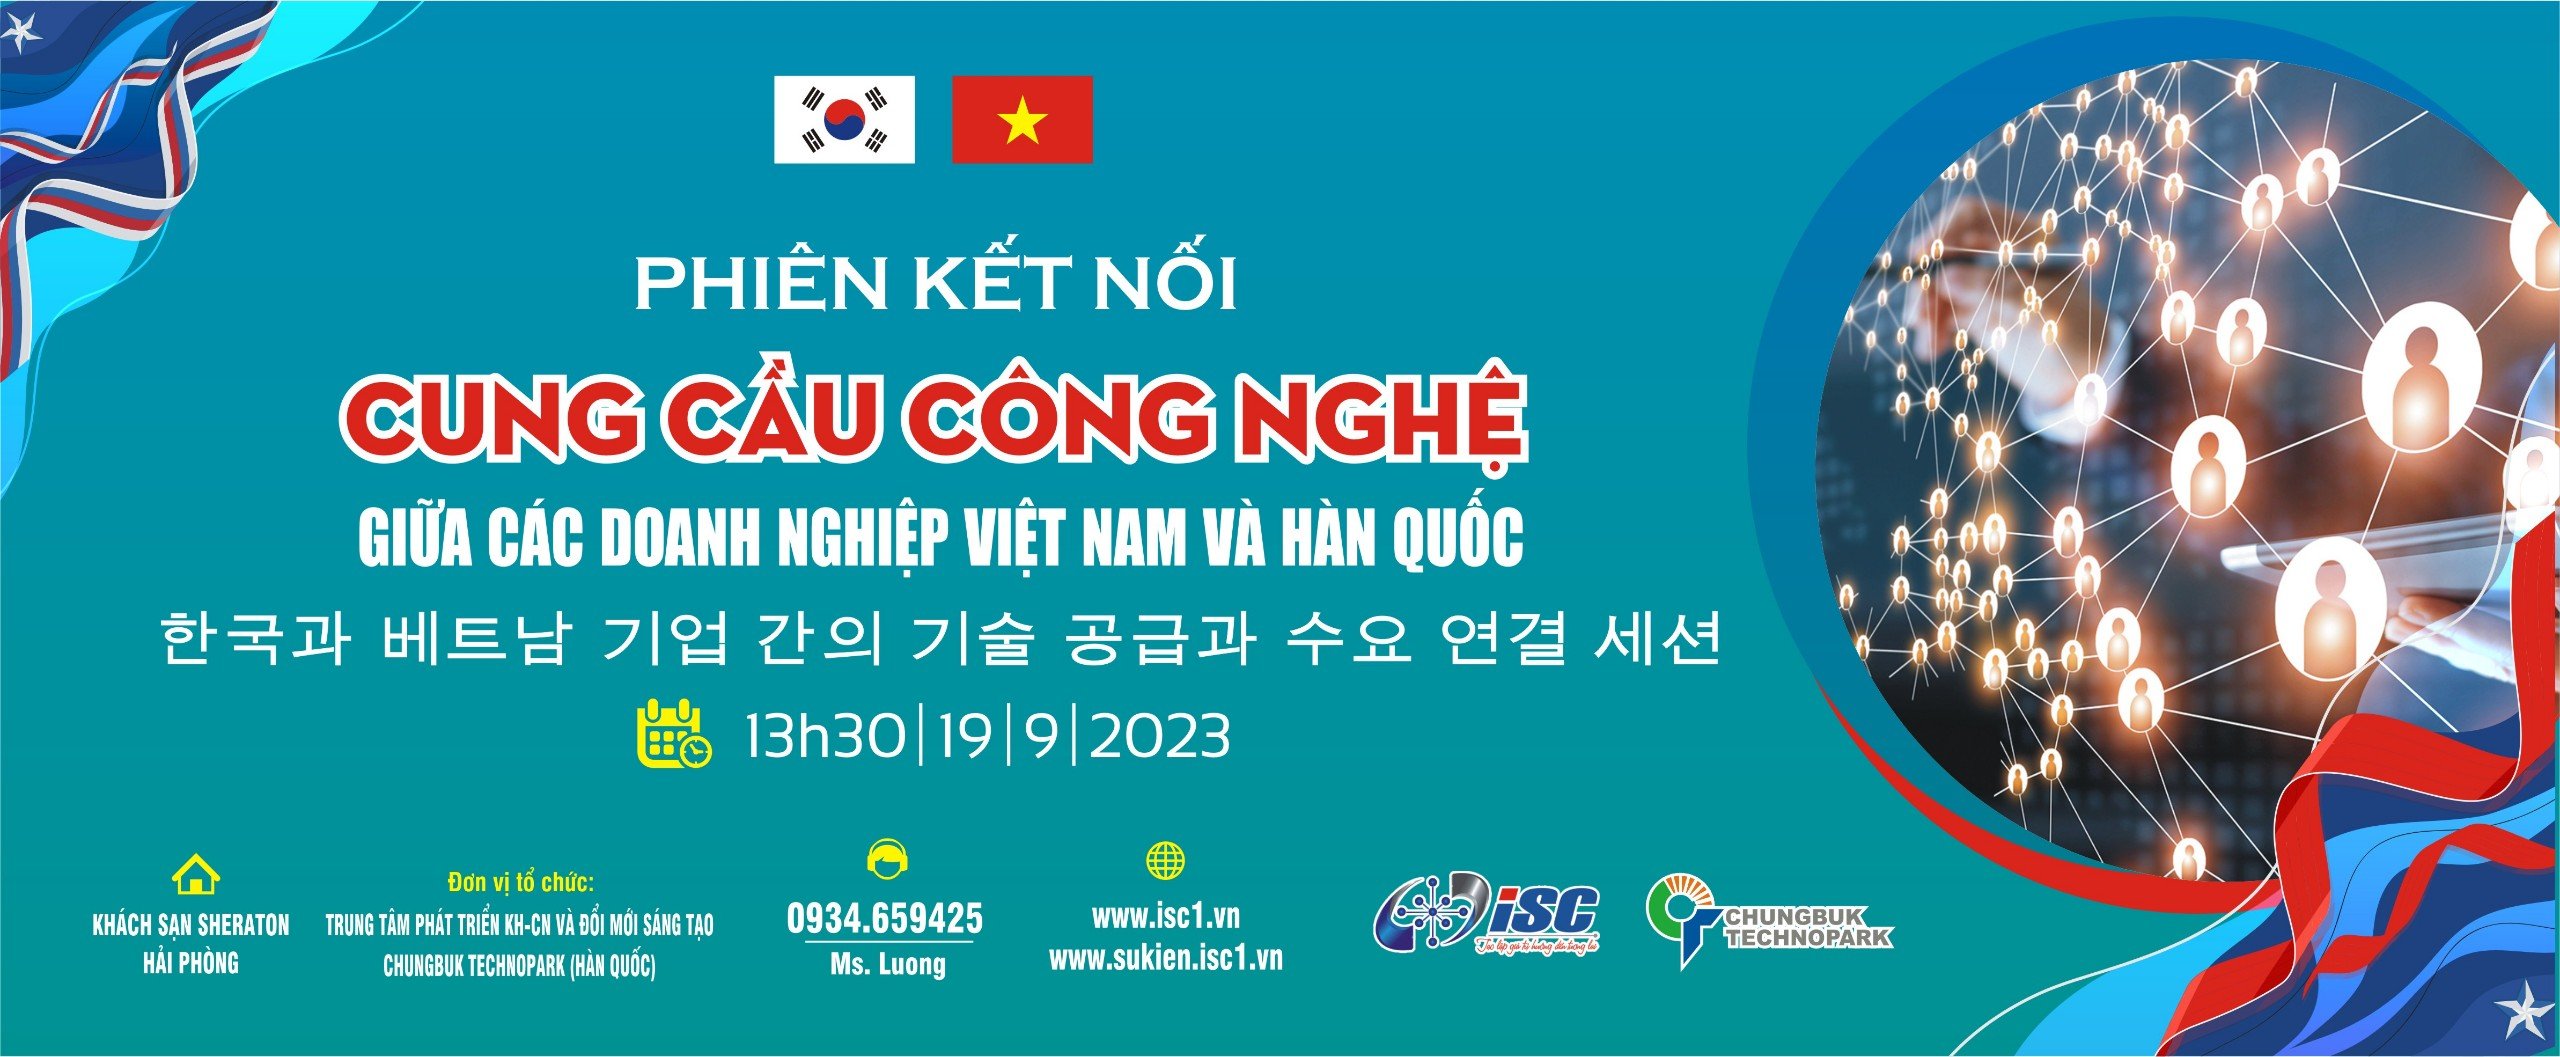 Phiên kết nối cung cầu công nghệ giữa các doanh nghiệp Việt Nam và Hàn Quốc